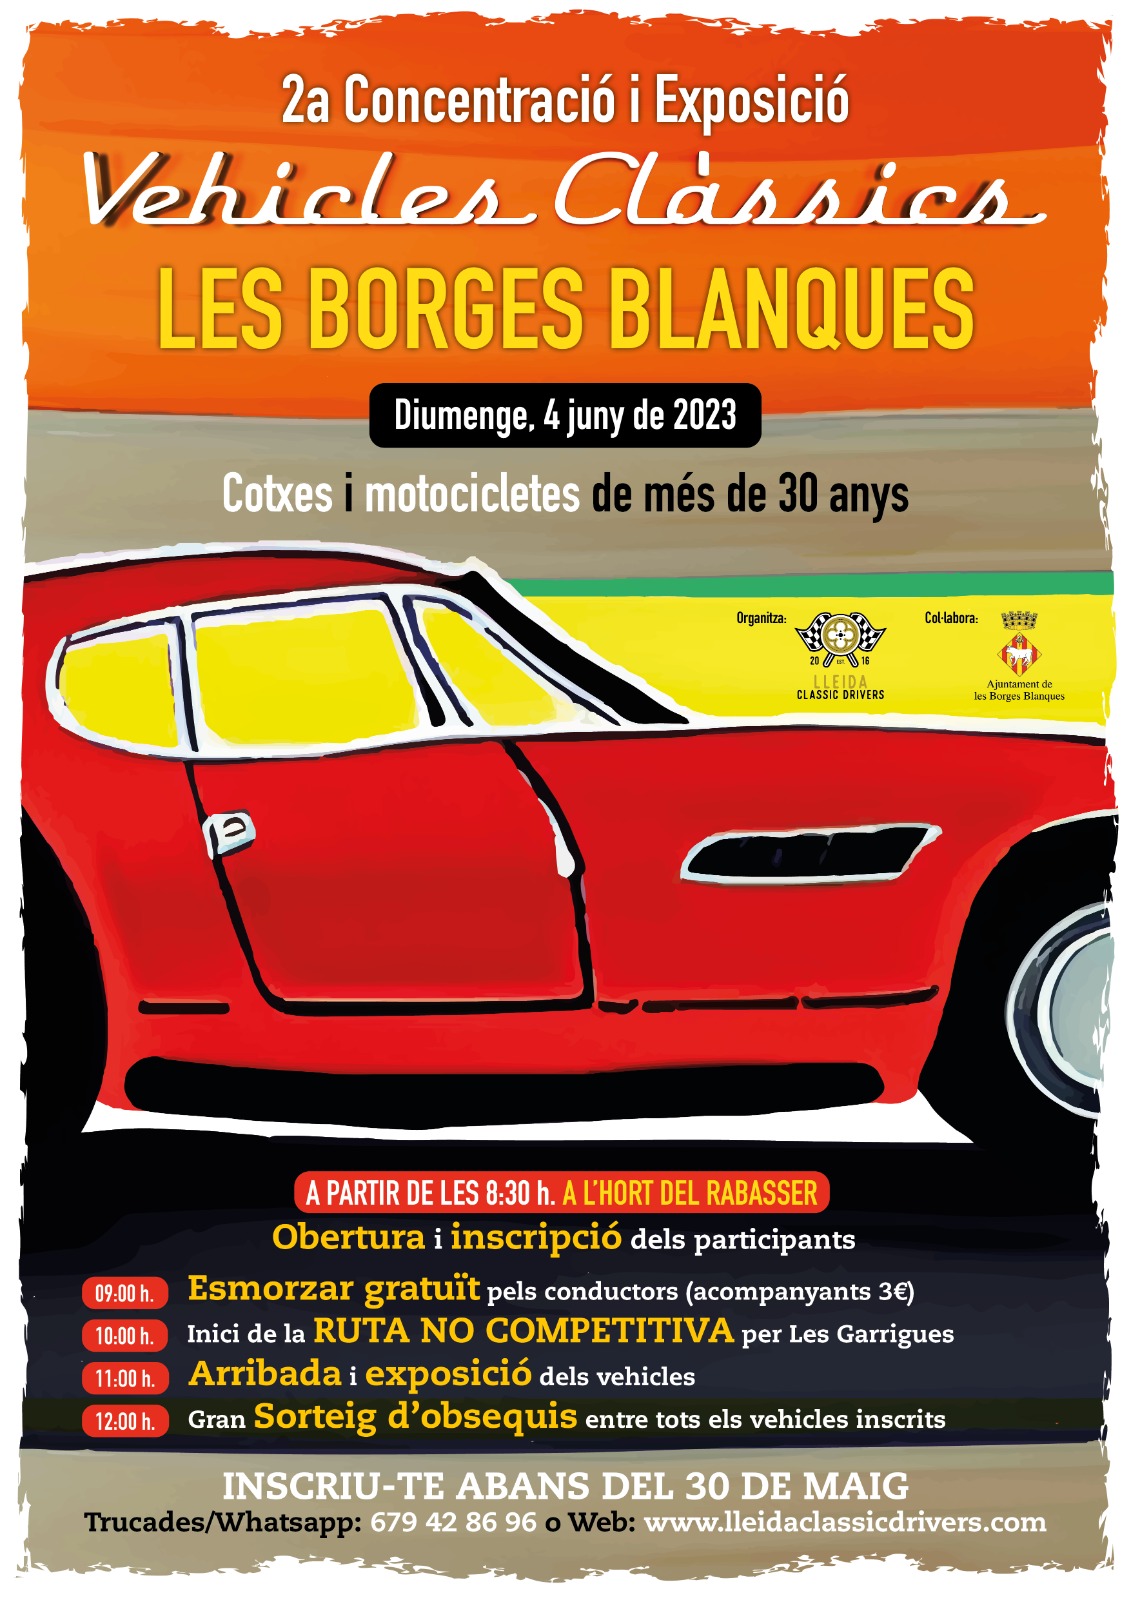 La 2a Concentració de Vehicles Clàssics a les Borges